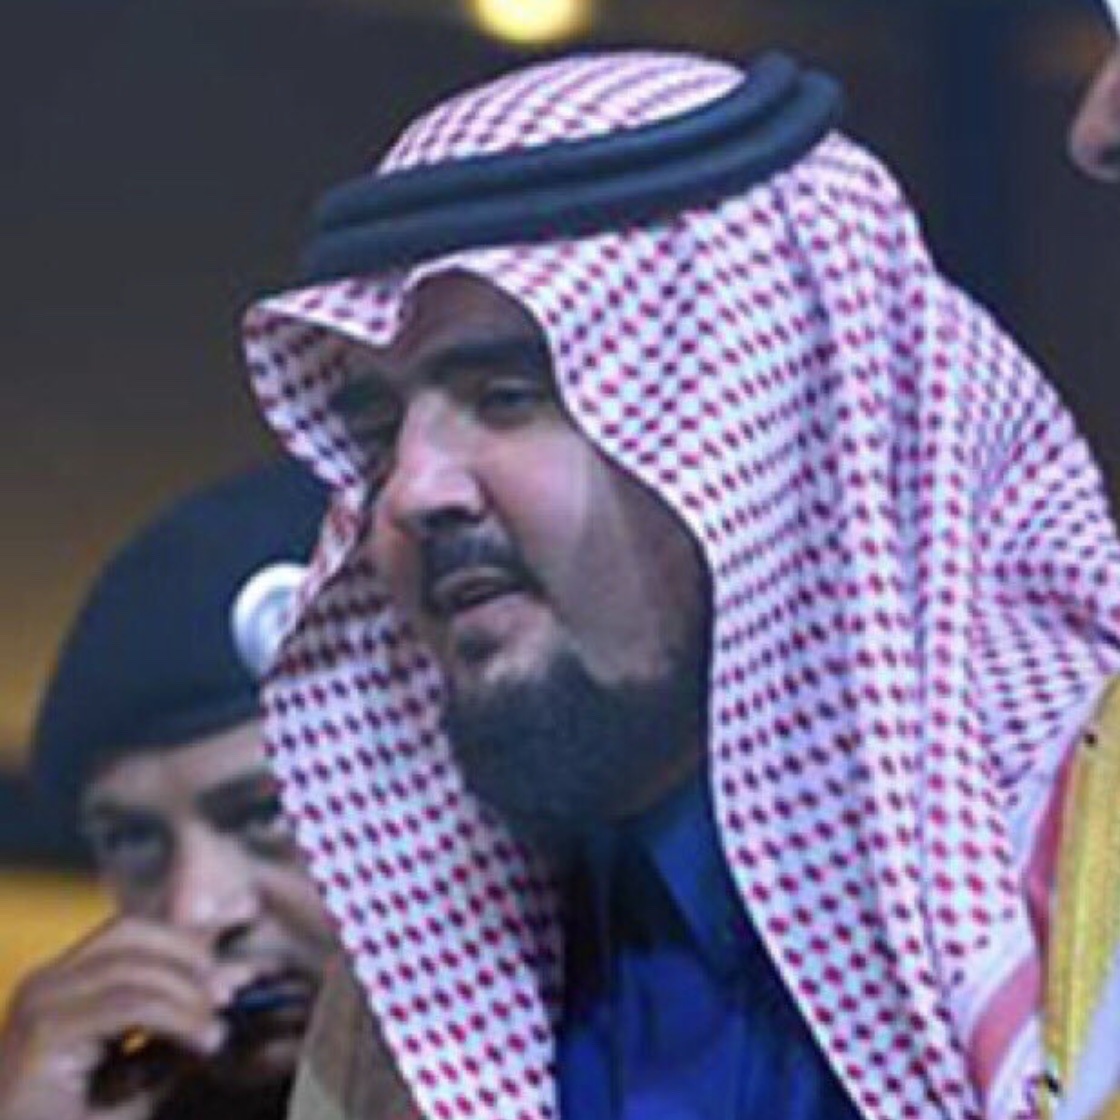 الامير عبدالله بن فهد ال سعود